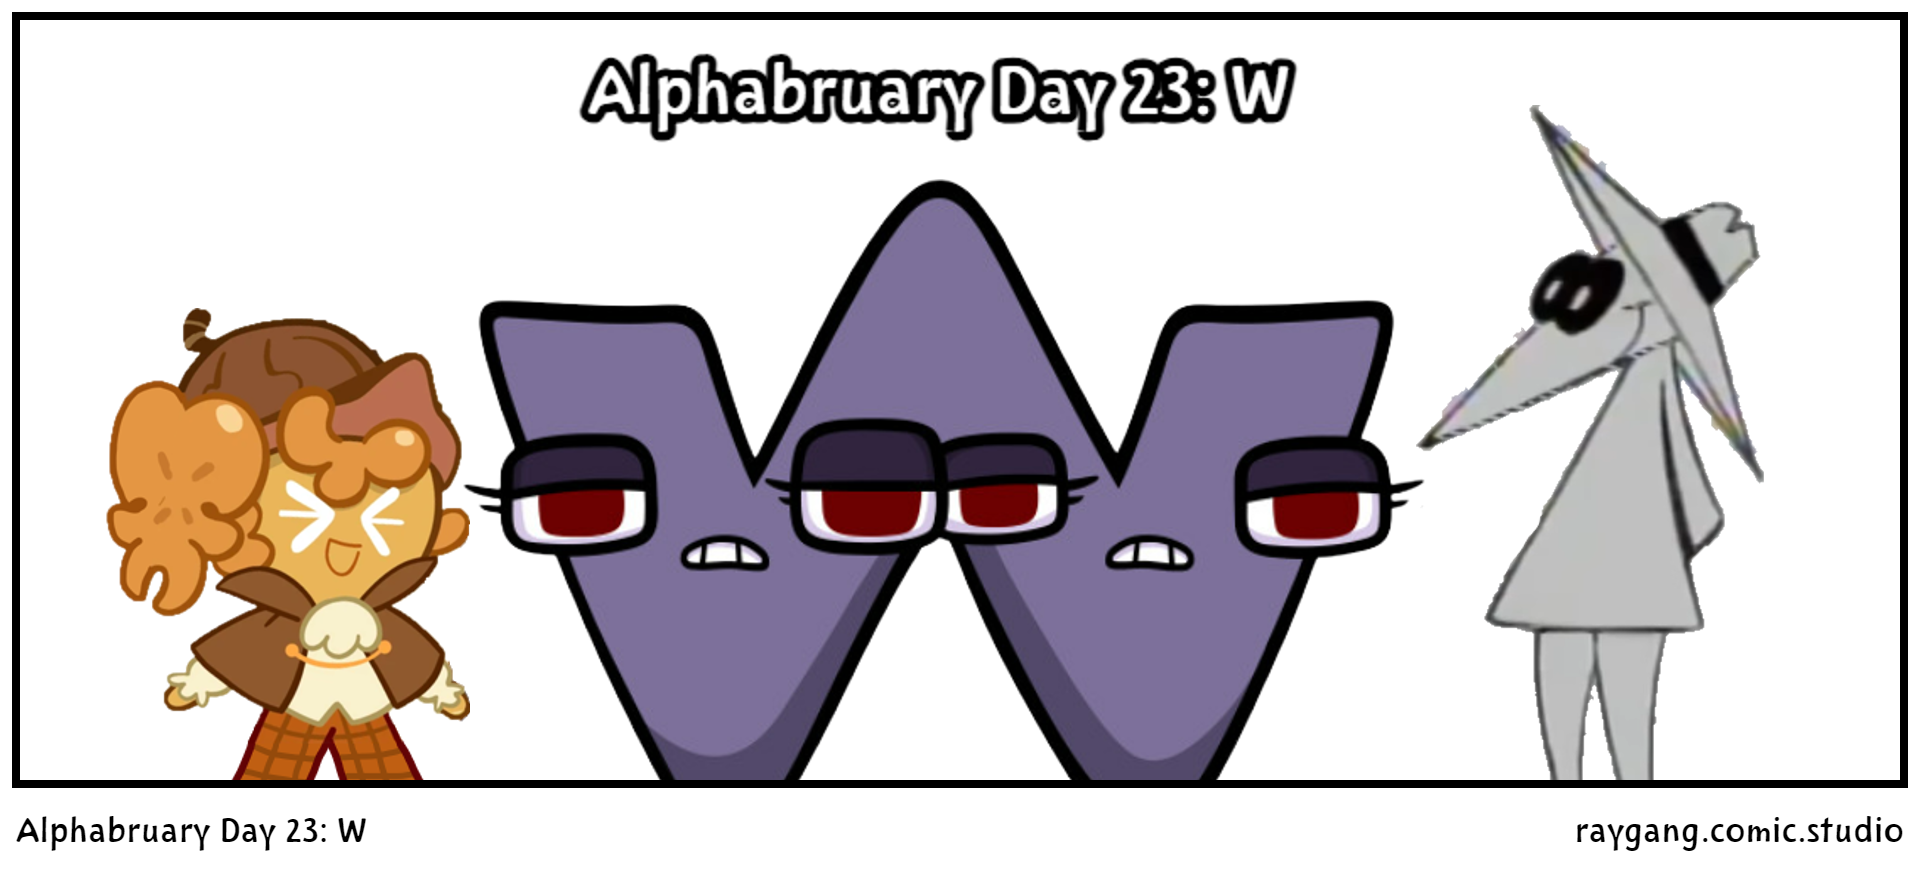 Alphabruary Day 23: W